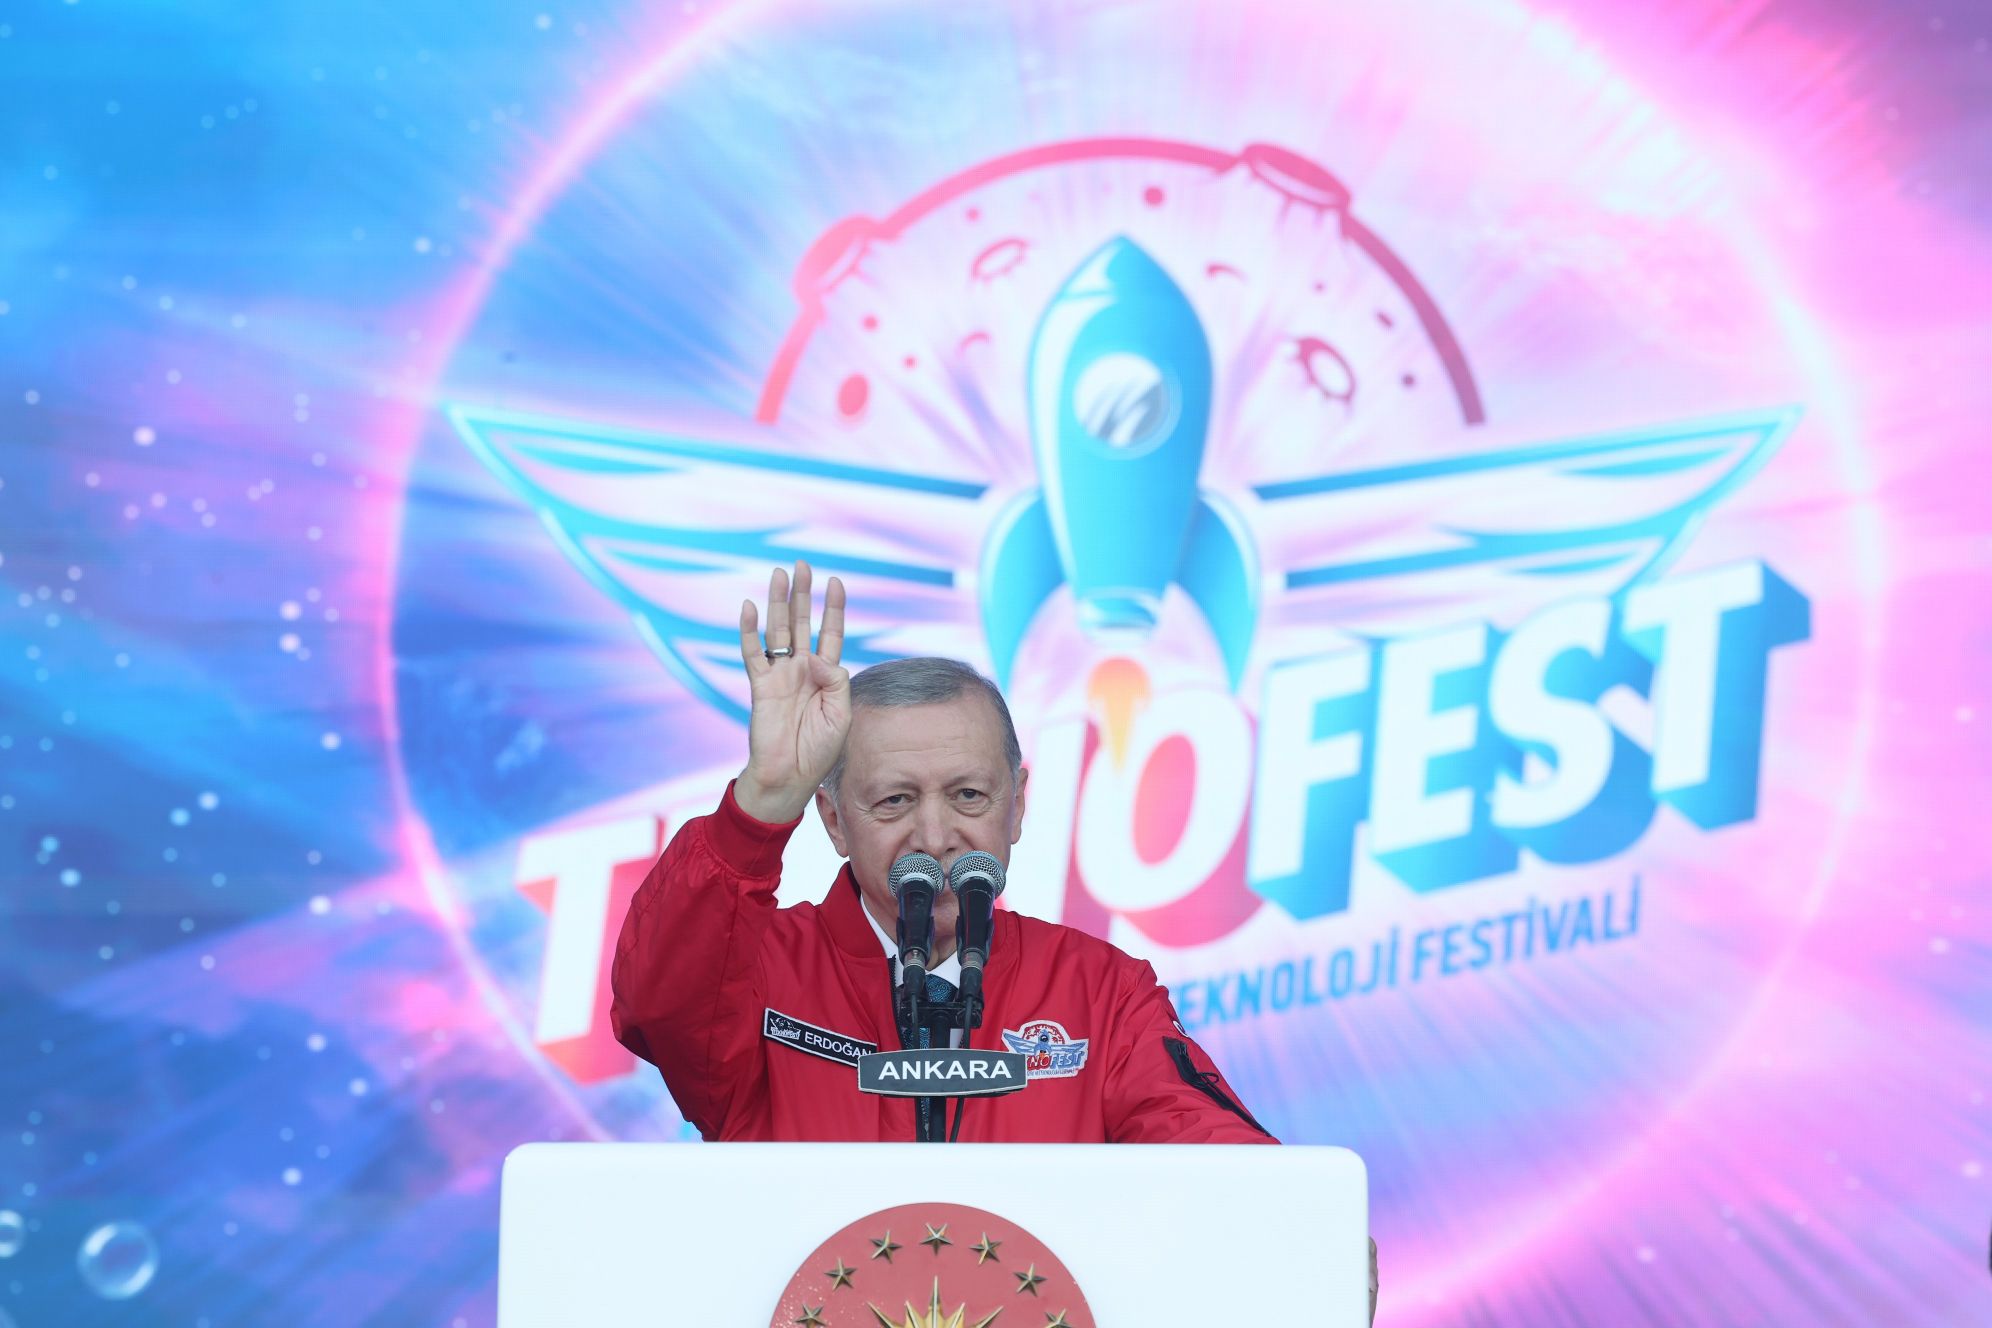 Cumhurbaşkanı Recep Tayyip Erdoğan, Etimesgut Havaalanı'nda düzenlenen dünyanın en büyük havacılık, uzay ve teknoloji festivali TEKNOFEST etkinlik alanını ziyaret etti. Cumhurbaşkanı Erdoğan, TEKNOFEST'e katılanlara teşekkür etti. TEKNOFEST’in Cumhuriyetin 100. yılı anısına 3 şehirde yapıldığını belirten Erdoğan, “Bunlardan TEKNOFEST İstanbul 27 Nisan-1 Mayıs tarihleri arasında gerçekleştirildi. Bugün birlikte olduğumuz TEKNOFEST Ankara 30 Ağustosta başladı, 3 Eylül’de bitiyor. Eylül sonunda yapılacak İzmir TEKNOFEST'te bu yılki teknoloji şöleni tamamlanacak. Her geçen yıl katılımcı ve ziyaretçi sayının katlanarak arttığı TEKNOFEST’e gösterilen ilgi bizi gerçekten çok sevindiriyor. Çünkü TEKNOFEST benim adeta evladım gibidir. Bundan 6 yıl önce 2017 yılında bir kucağıma torunum Aybüke'yi diğer kucağıma o günlerde fikri oluşum içindeki TEKNOFEST'i alma bahtiyarlığını yaşadım. Hem torunumun hem de milli teknoloji hamlesinin sembolü haline gelen bu güzel festivalin büyümesine, serpilmesine, gelişmesine bizzat şahitlik ettim. Ülkemiz ve milletimiz için çok önemli bir milat olan 2023 TEKNOFEST'ine ilkokuldan doktoraya kadar her seviyeden bir milyon gencimizin başvurduğunu öğrendik. İşte bu tablo Türkiye'ye Yüzyılı tablosudur. Milli mücadeleyi zafere ulaştıran Büyük Taarruz'un yıl dönümü olan 30 Ağustos'ta milletimizle paylaştığımız Cumhuriyetimizin 100. yıl yılı marşında ne diyor? Özgürlük tutkusu damarlarımda çelikten her nefer semalarımda, karmaşık gibi sarılmışız biz bize. ‘Tek yürek, bu millet en zor anında. Düşmanlar bir olsa yağsa, göklerden denizler köpürse taşsa dağlardan kimseyi eğmedik boynumuzu eğmeyiz, kahraman yarattı Türk'ü yaradan." diye konuştu.
